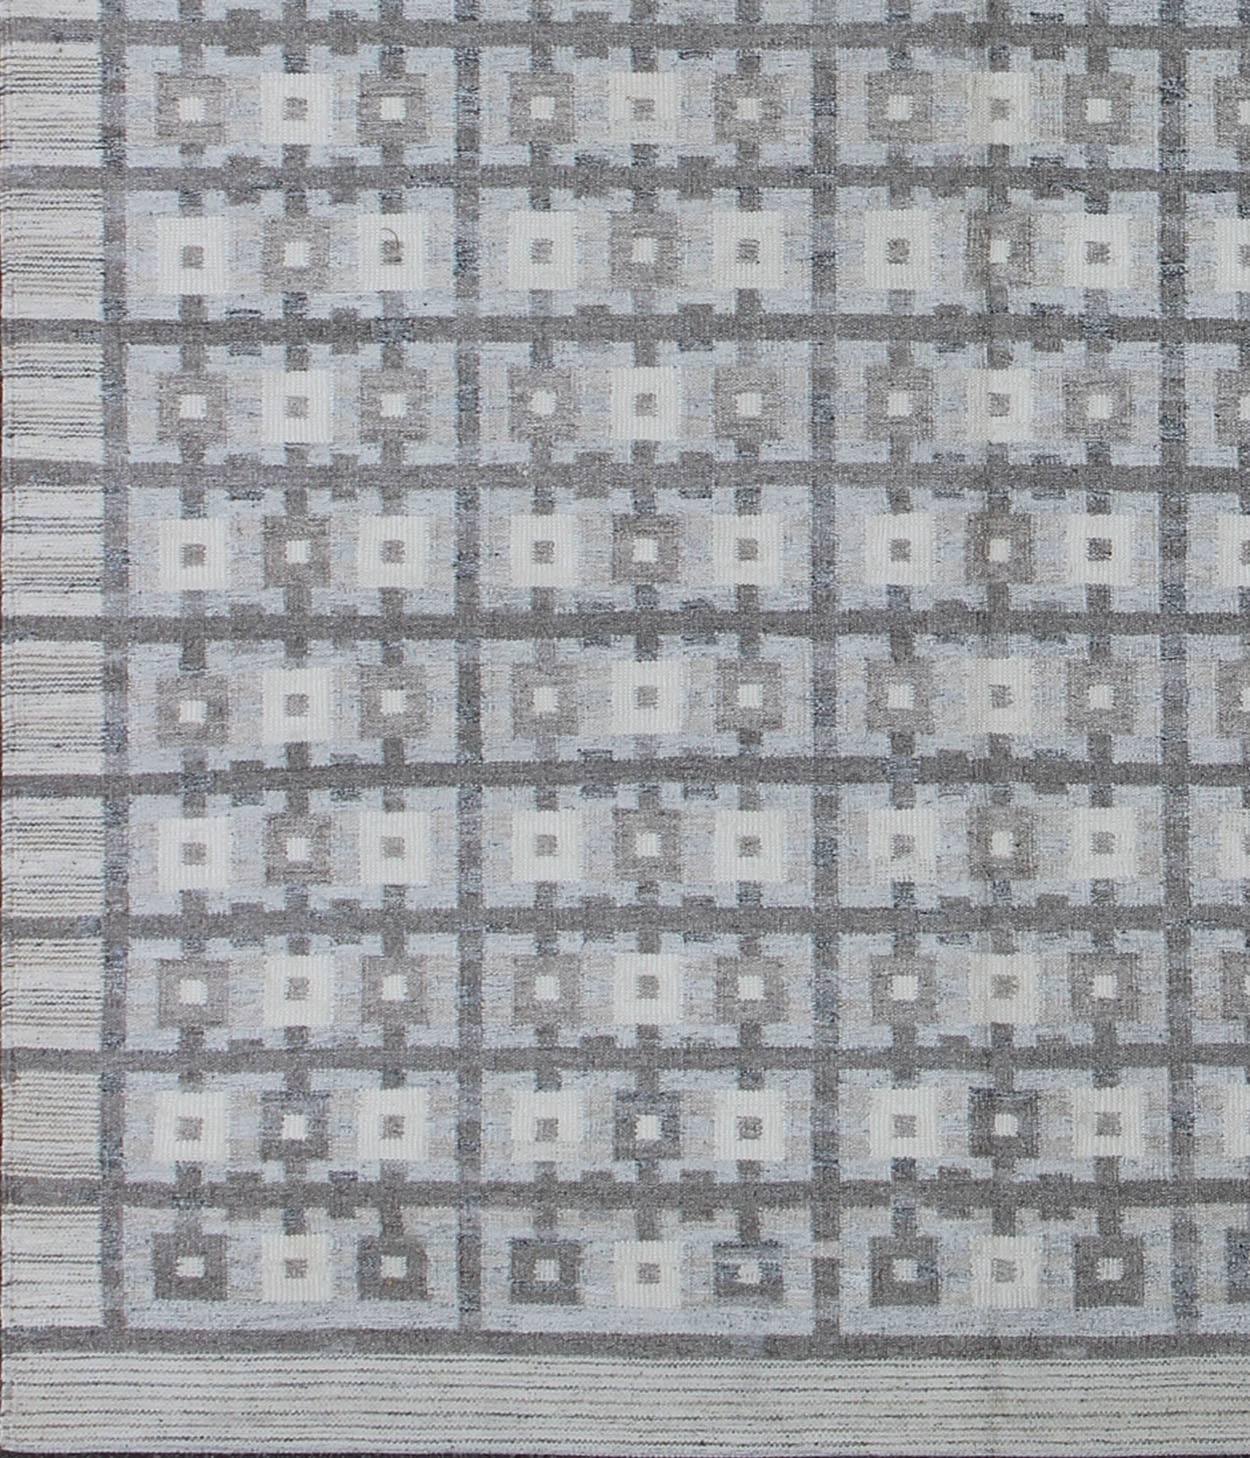 Dieser skandinavische Teppich mit Flachgewebe-Muster ist von den Arbeiten schwedischer Textildesigner des frühen bis mittleren 20. Jahrhunderts inspiriert. Mit einer einzigartigen Mischung aus historischem und modernem Design eignet sich diese